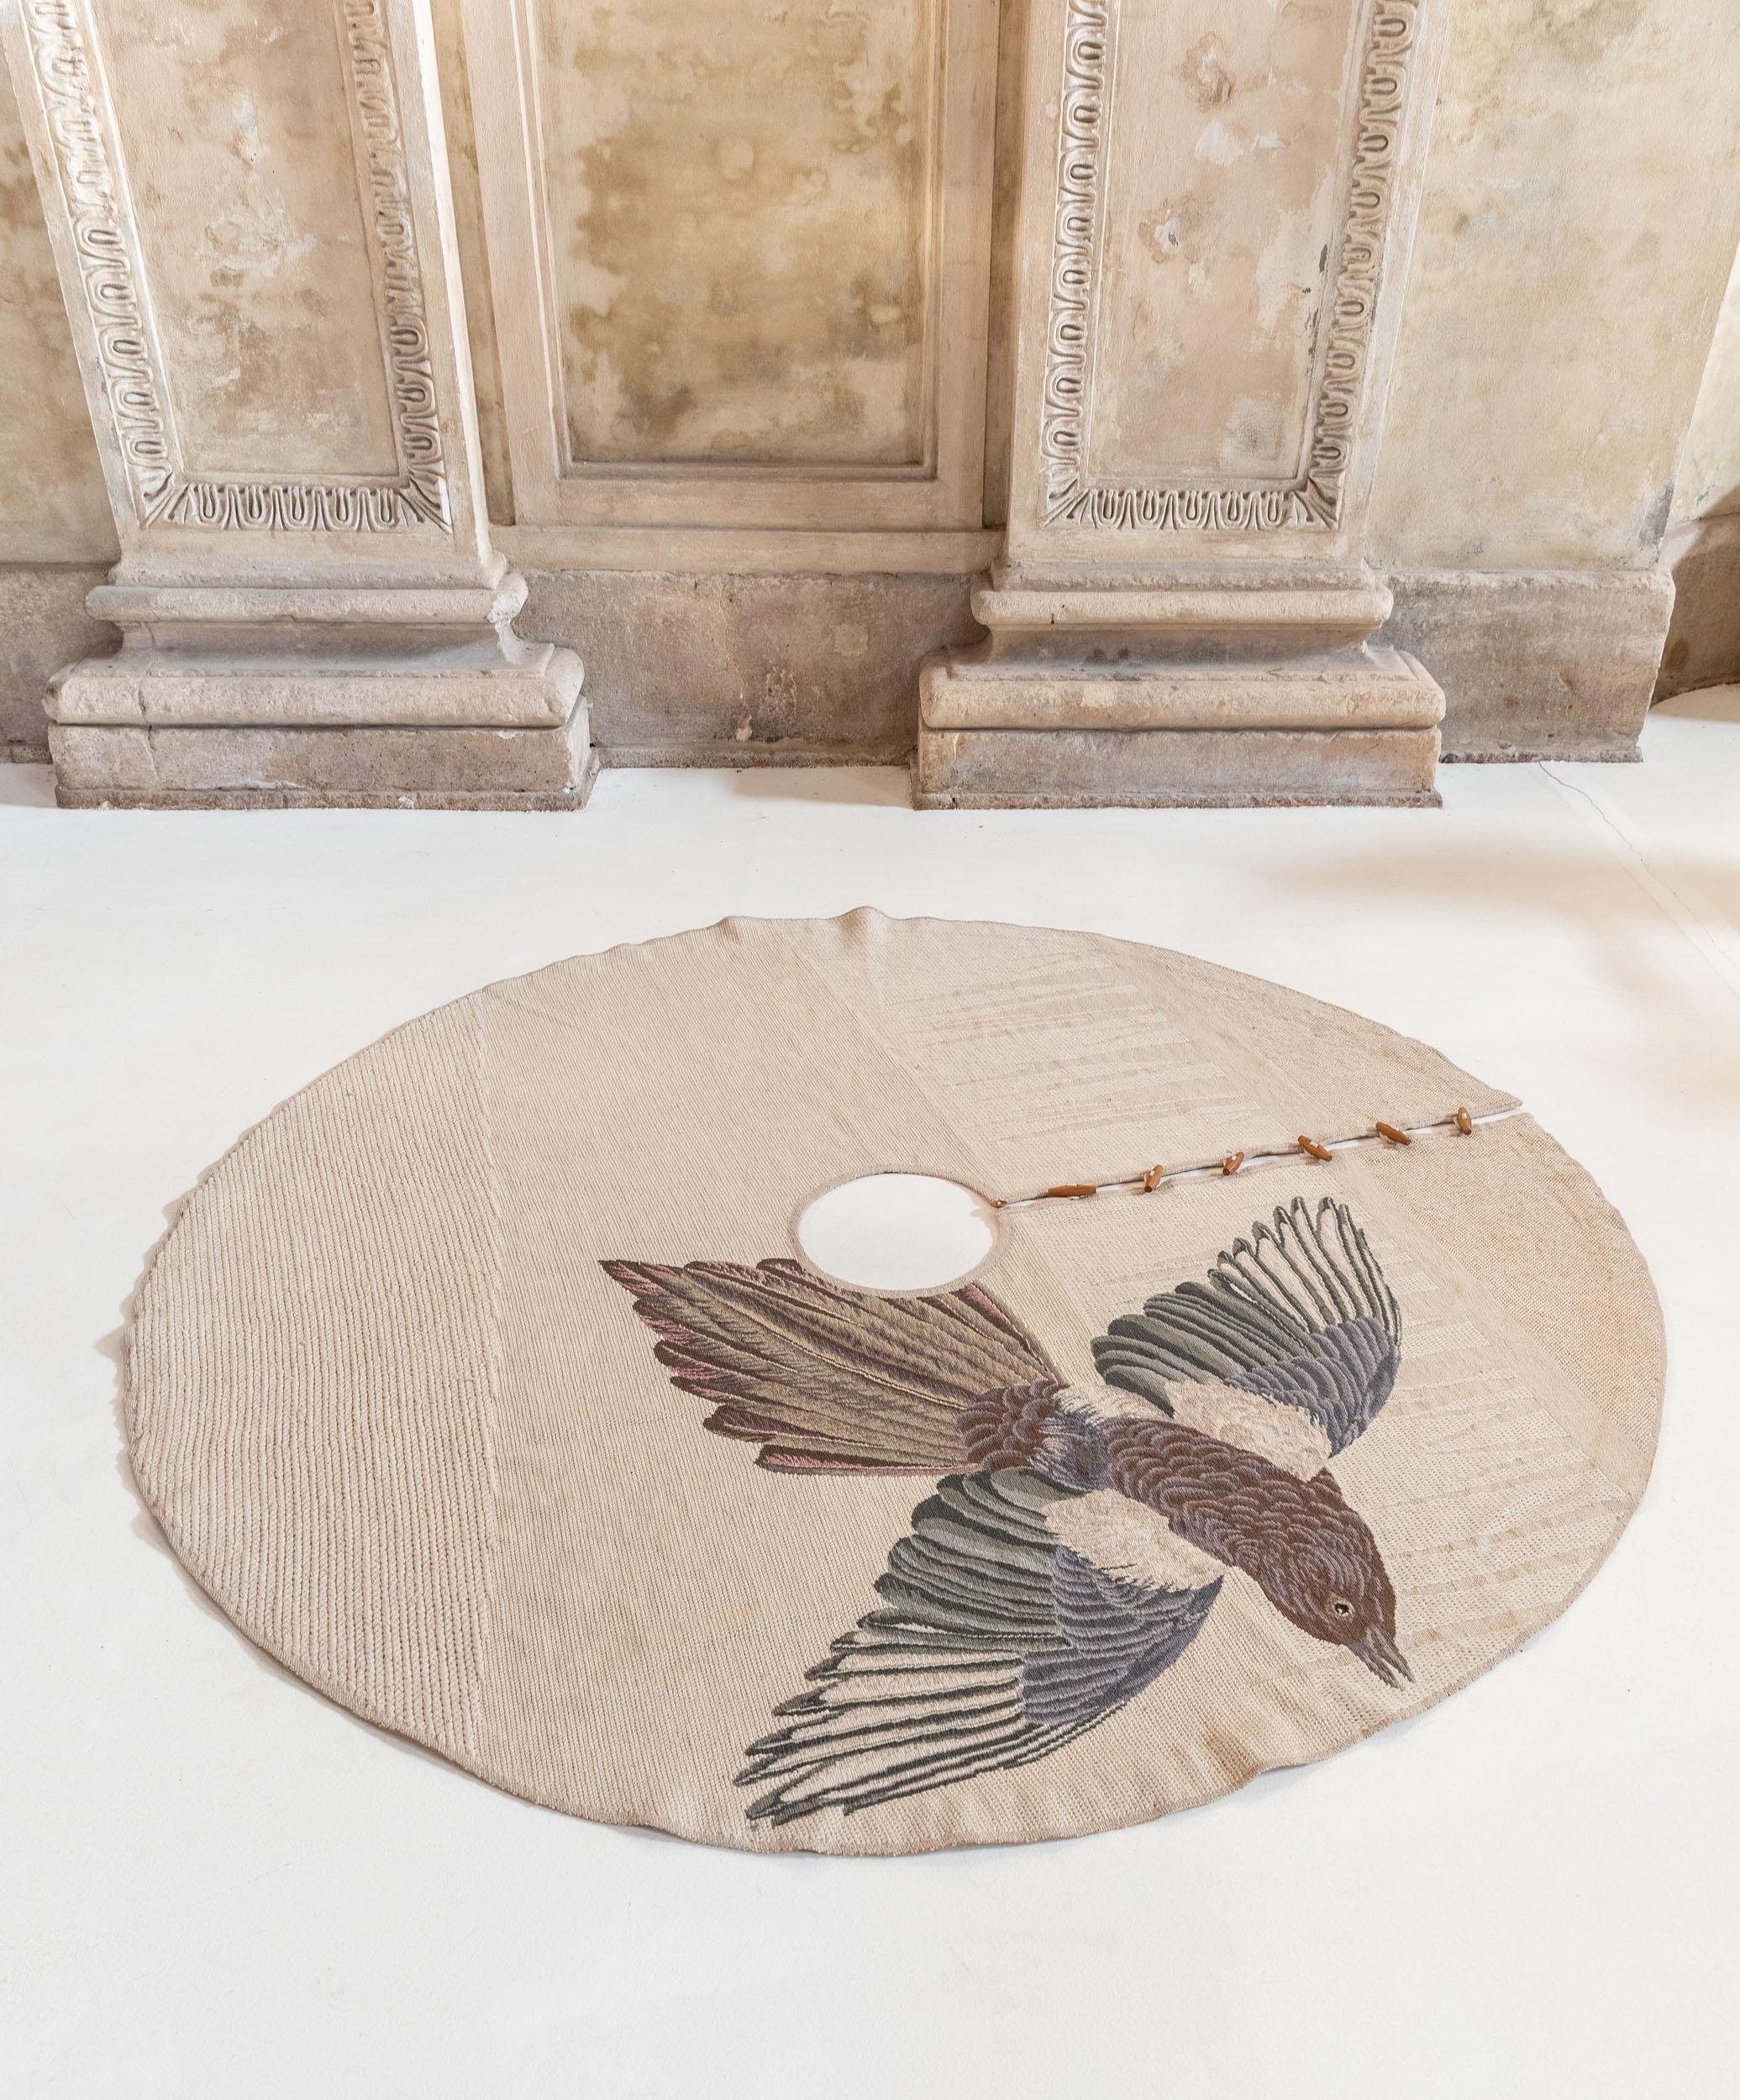 Le Studio FormaFantasma a conçu MIGRATION, une collection de trois tapis pour Nodus, en s'inspirant du travail de l'ornithologue du XIXe siècle Jan James Audubon, qui catégorisait scientifiquement les oiseaux. 

Sur les dessins finaux, au lieu de